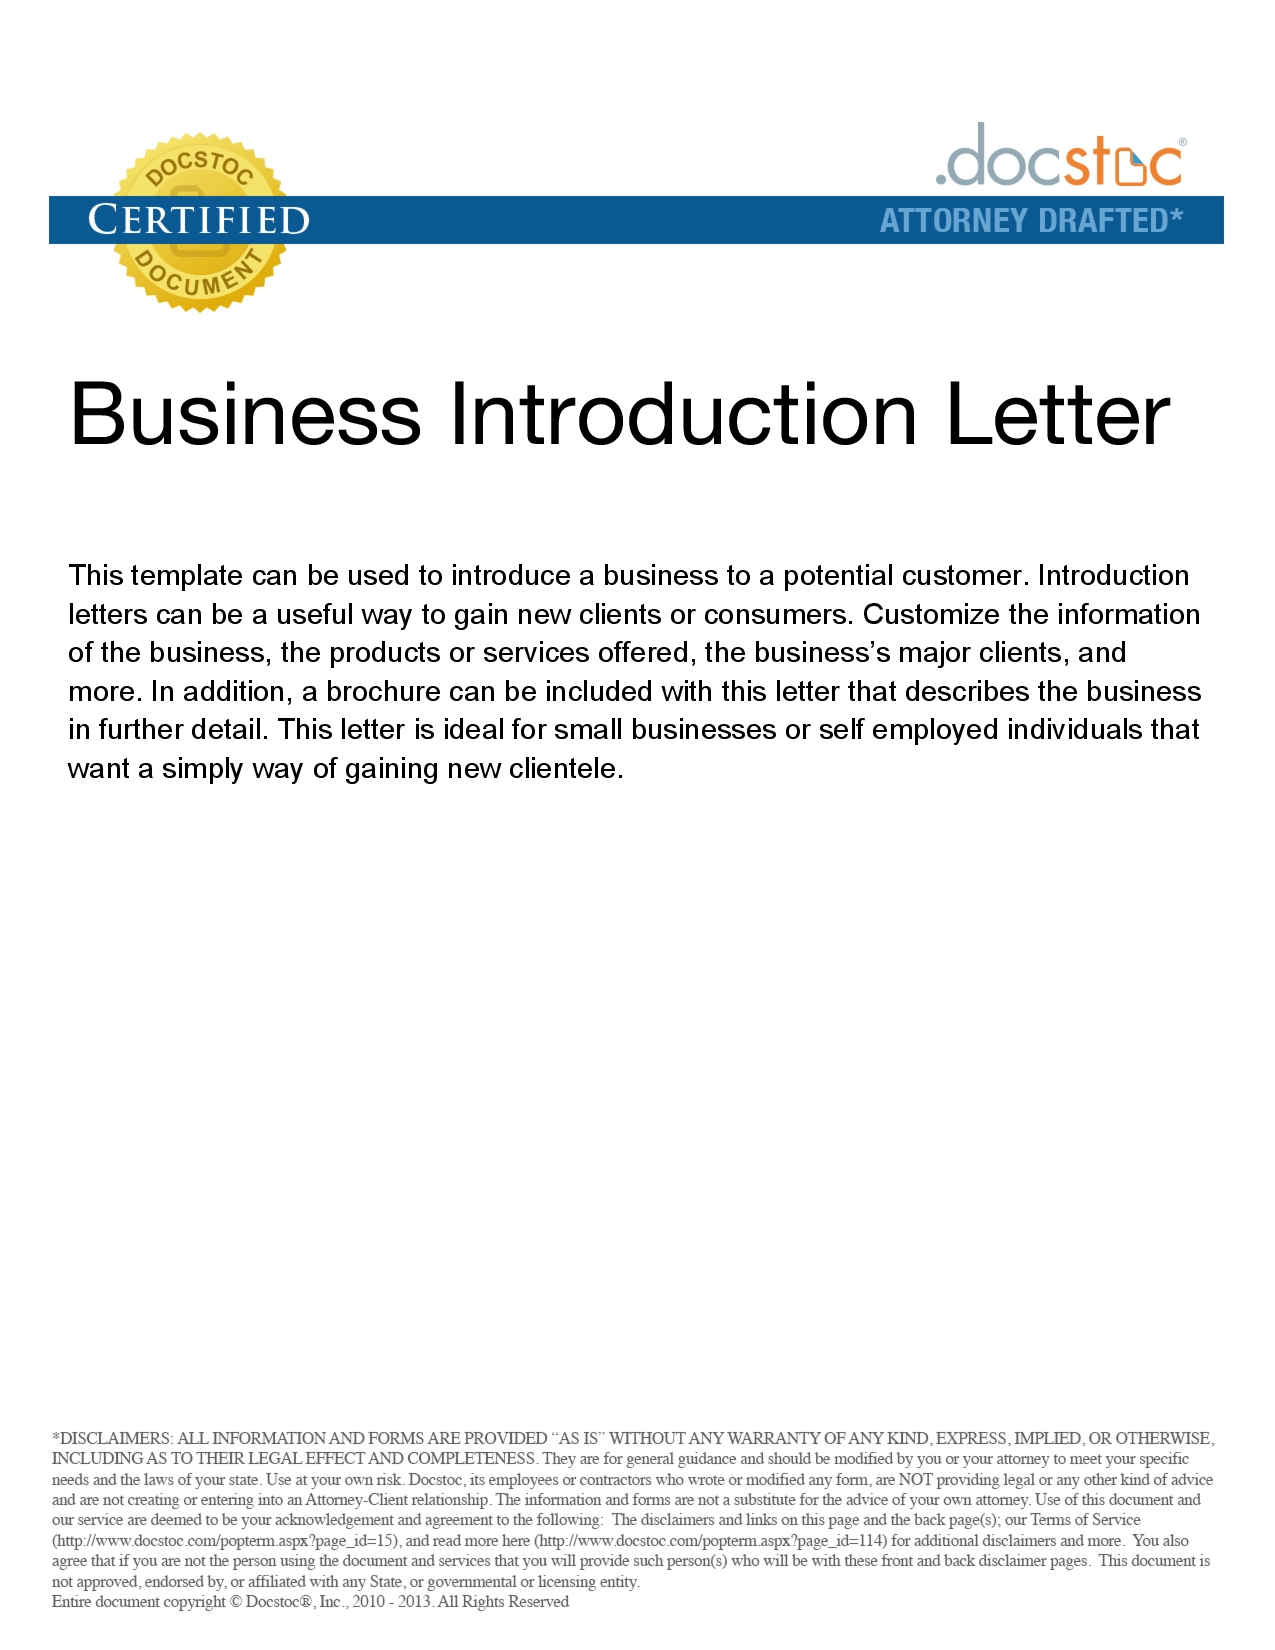 business introduction letter templates free – elrey de bodas